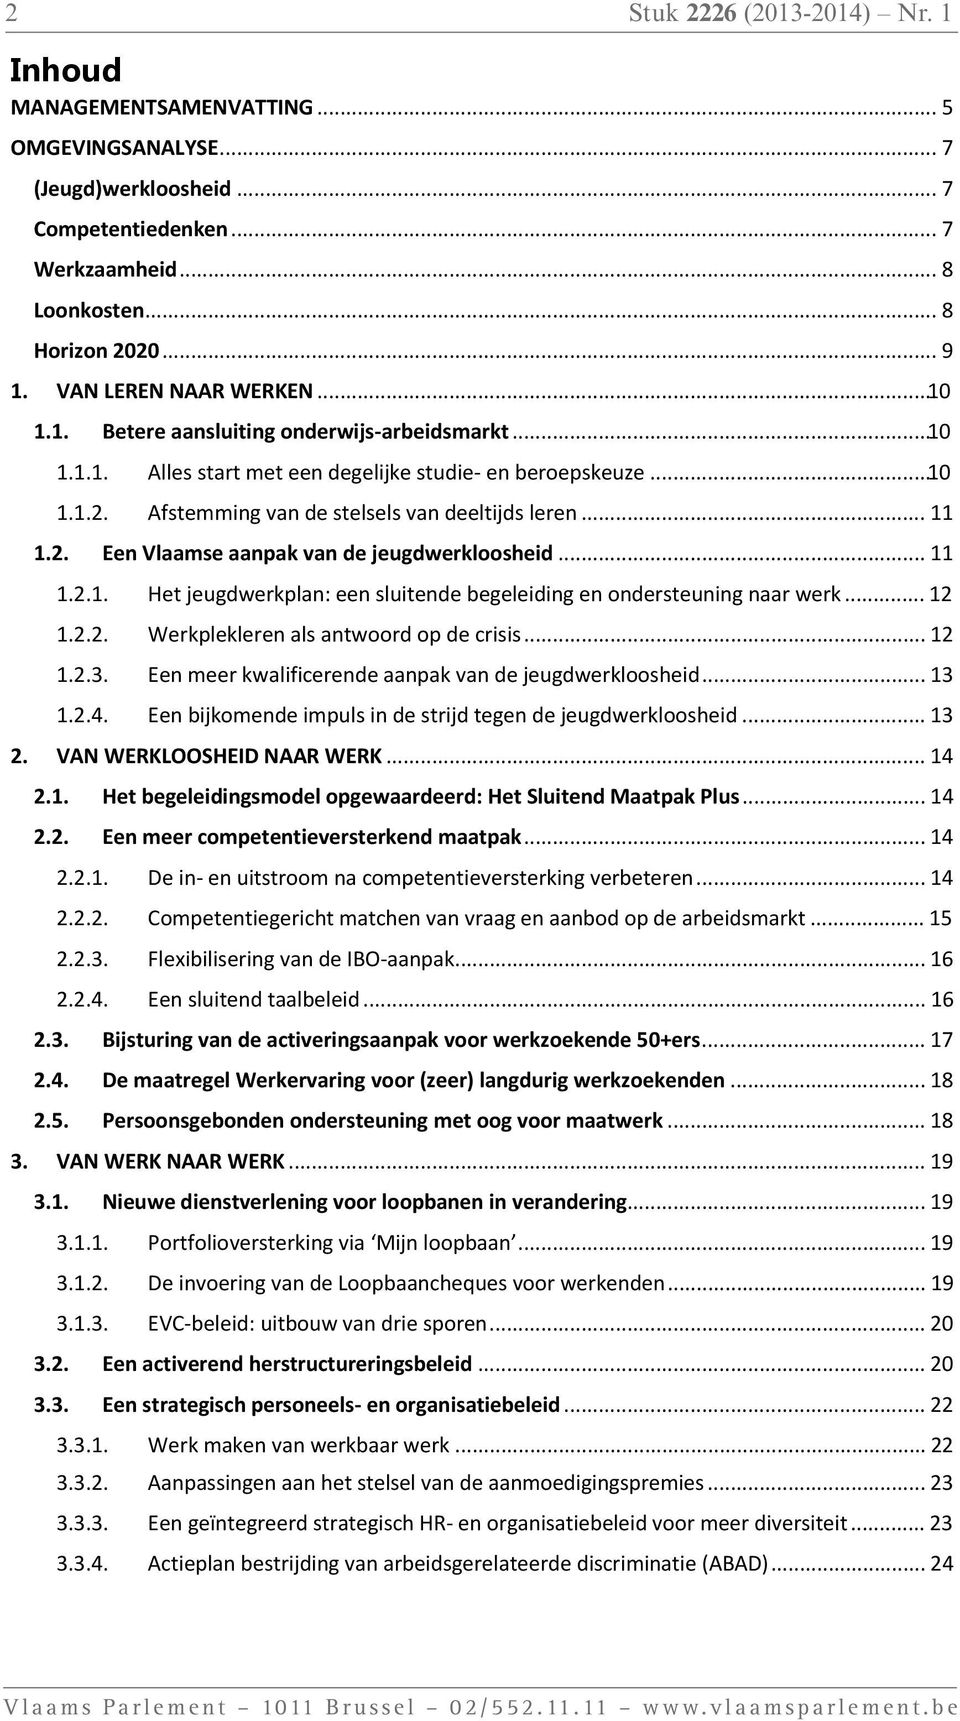 .. 10 Alles start met een degelijke studie- en beroepskeuze... 10 Afstemming van de stelsels van deeltijds leren... 11 Een Vlaamse aanpak van de jeugdwerkloosheid.